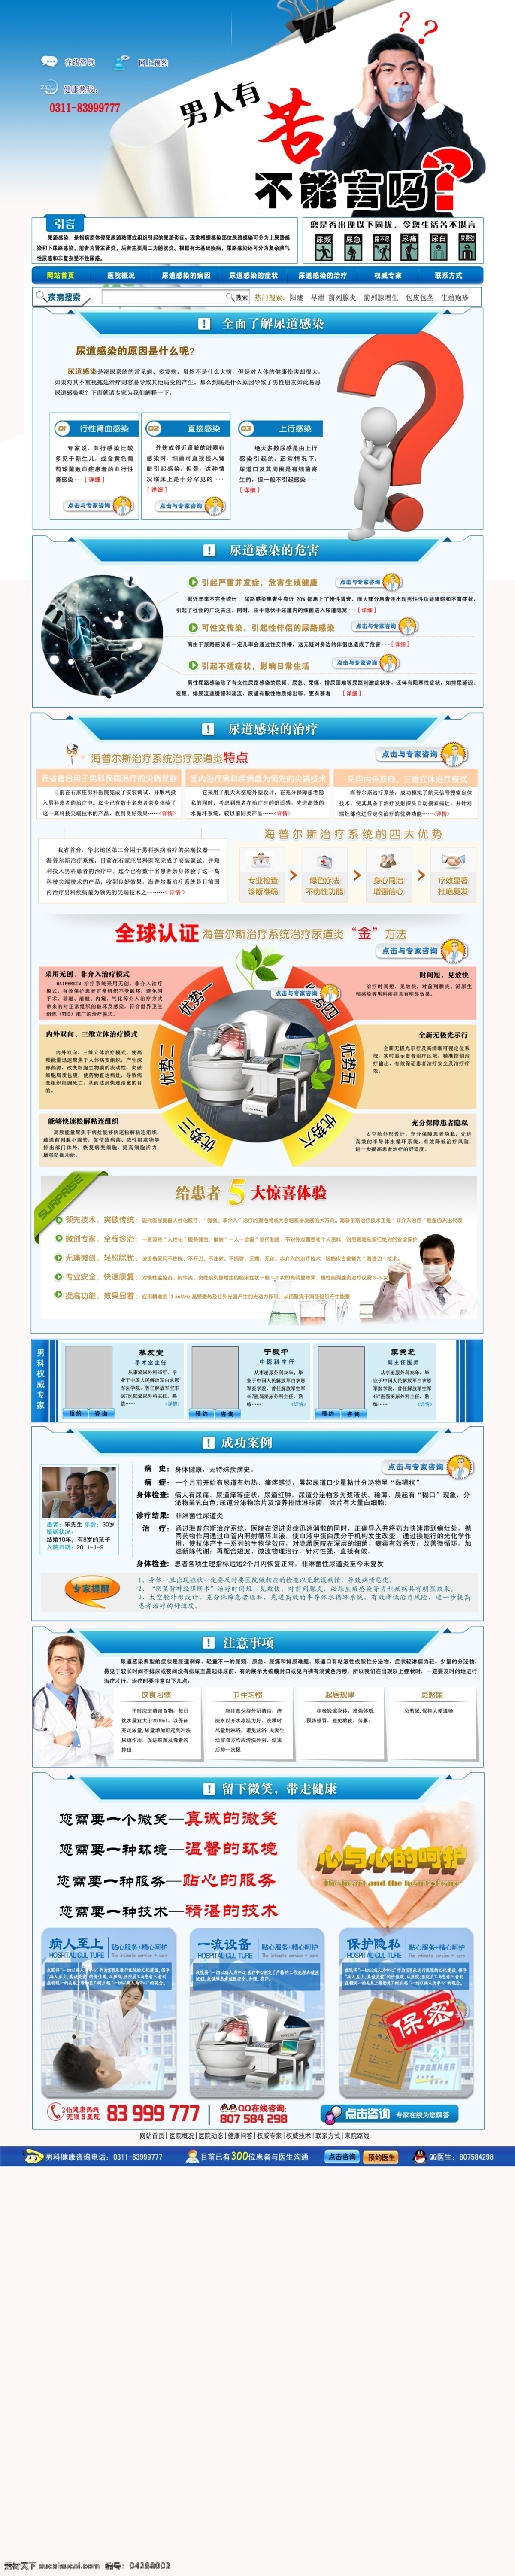 医院网站 尿路感染 男科医院 男人 痛苦的男人 问号 服务 中文模板 网页模板 源文件